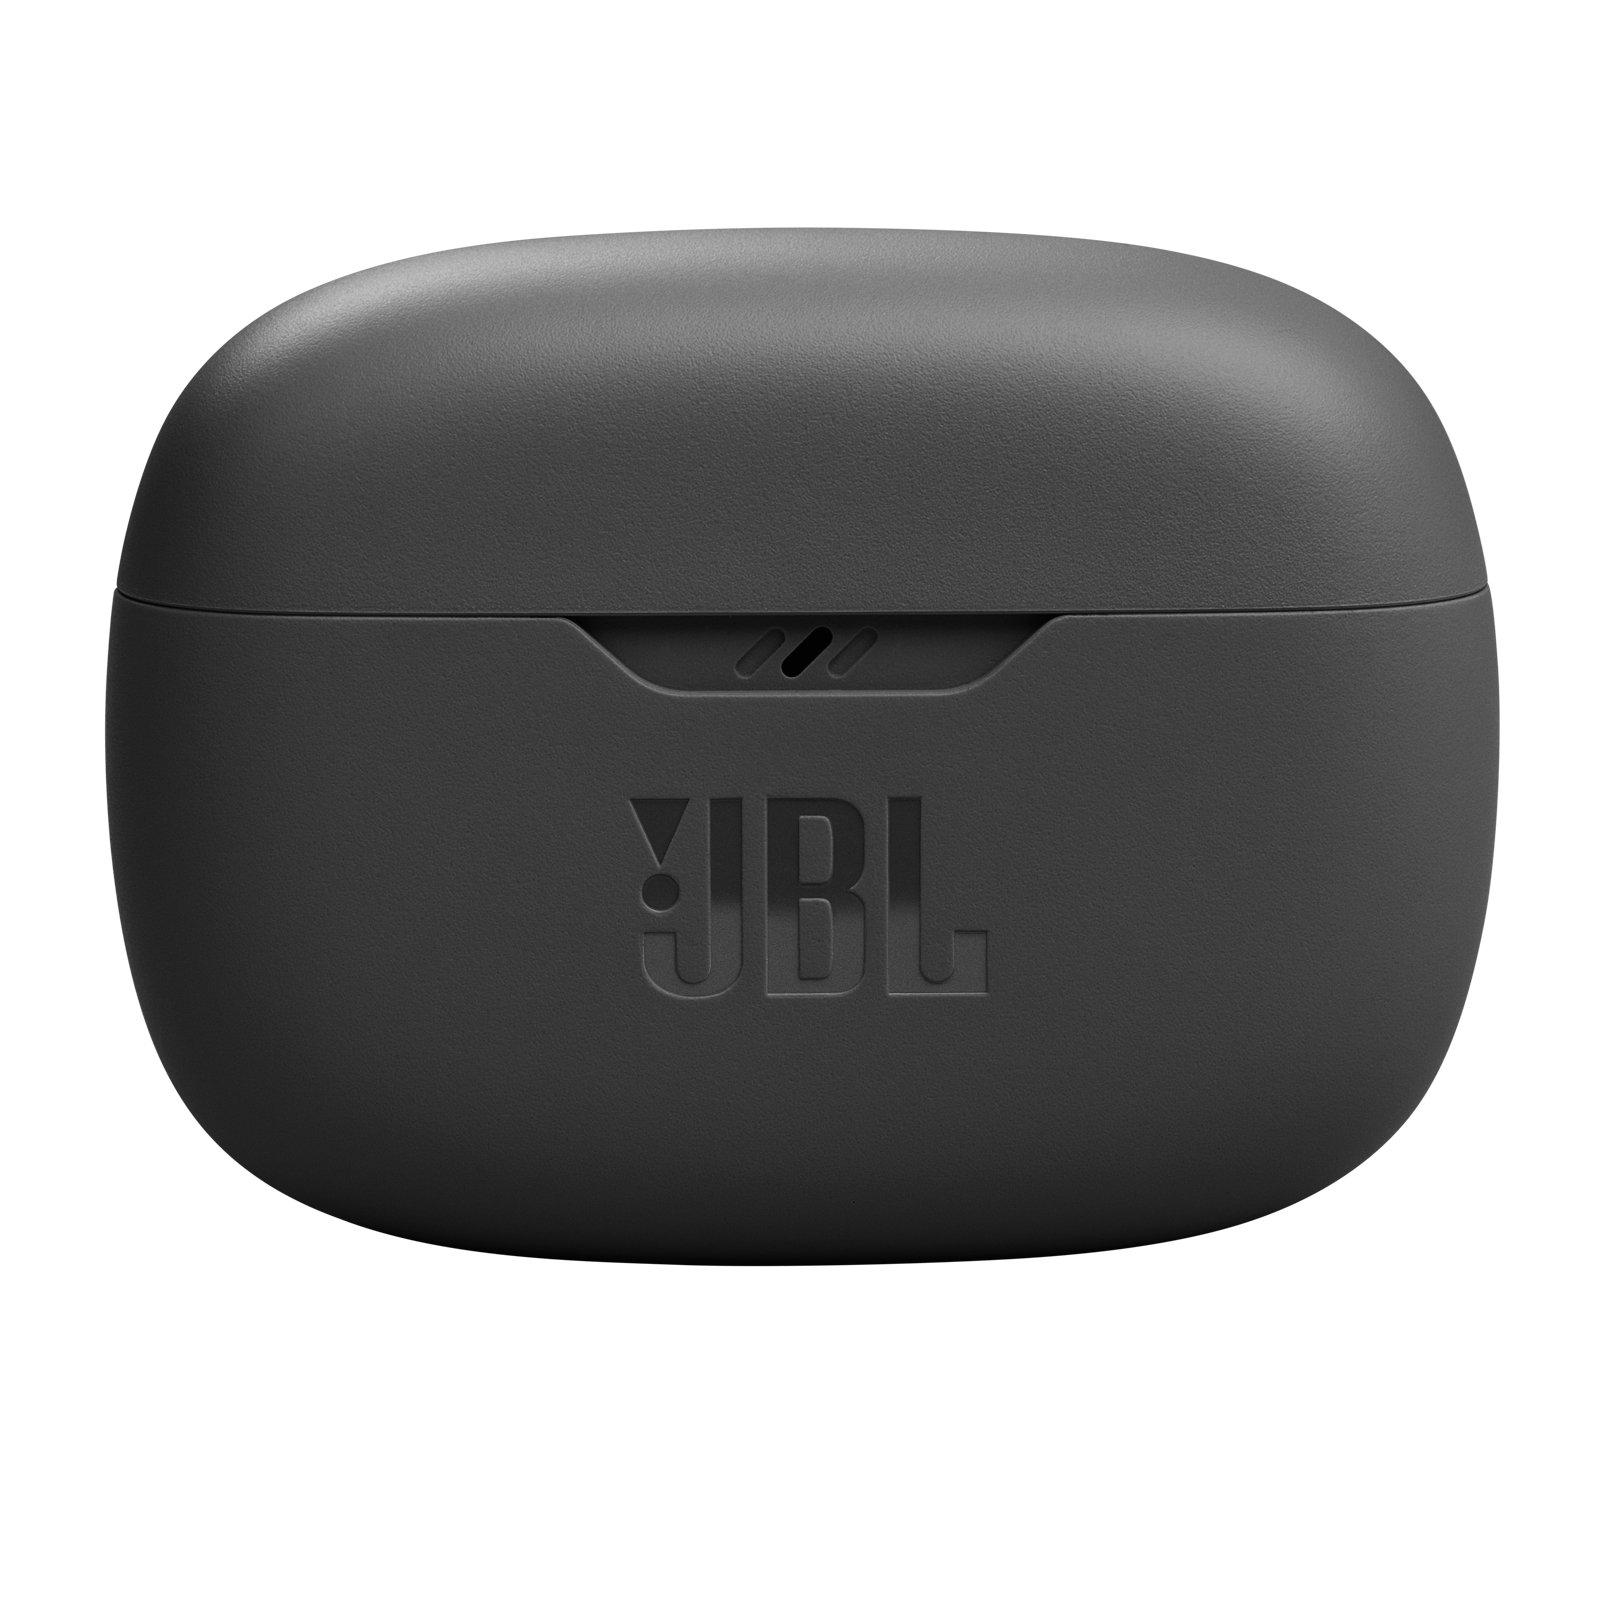 JBL  JBL Wave Beam Casque True Wireless Stereo (TWS) Ecouteurs Appels/Musique/Sport/Au quotidien Bluetooth Noir 